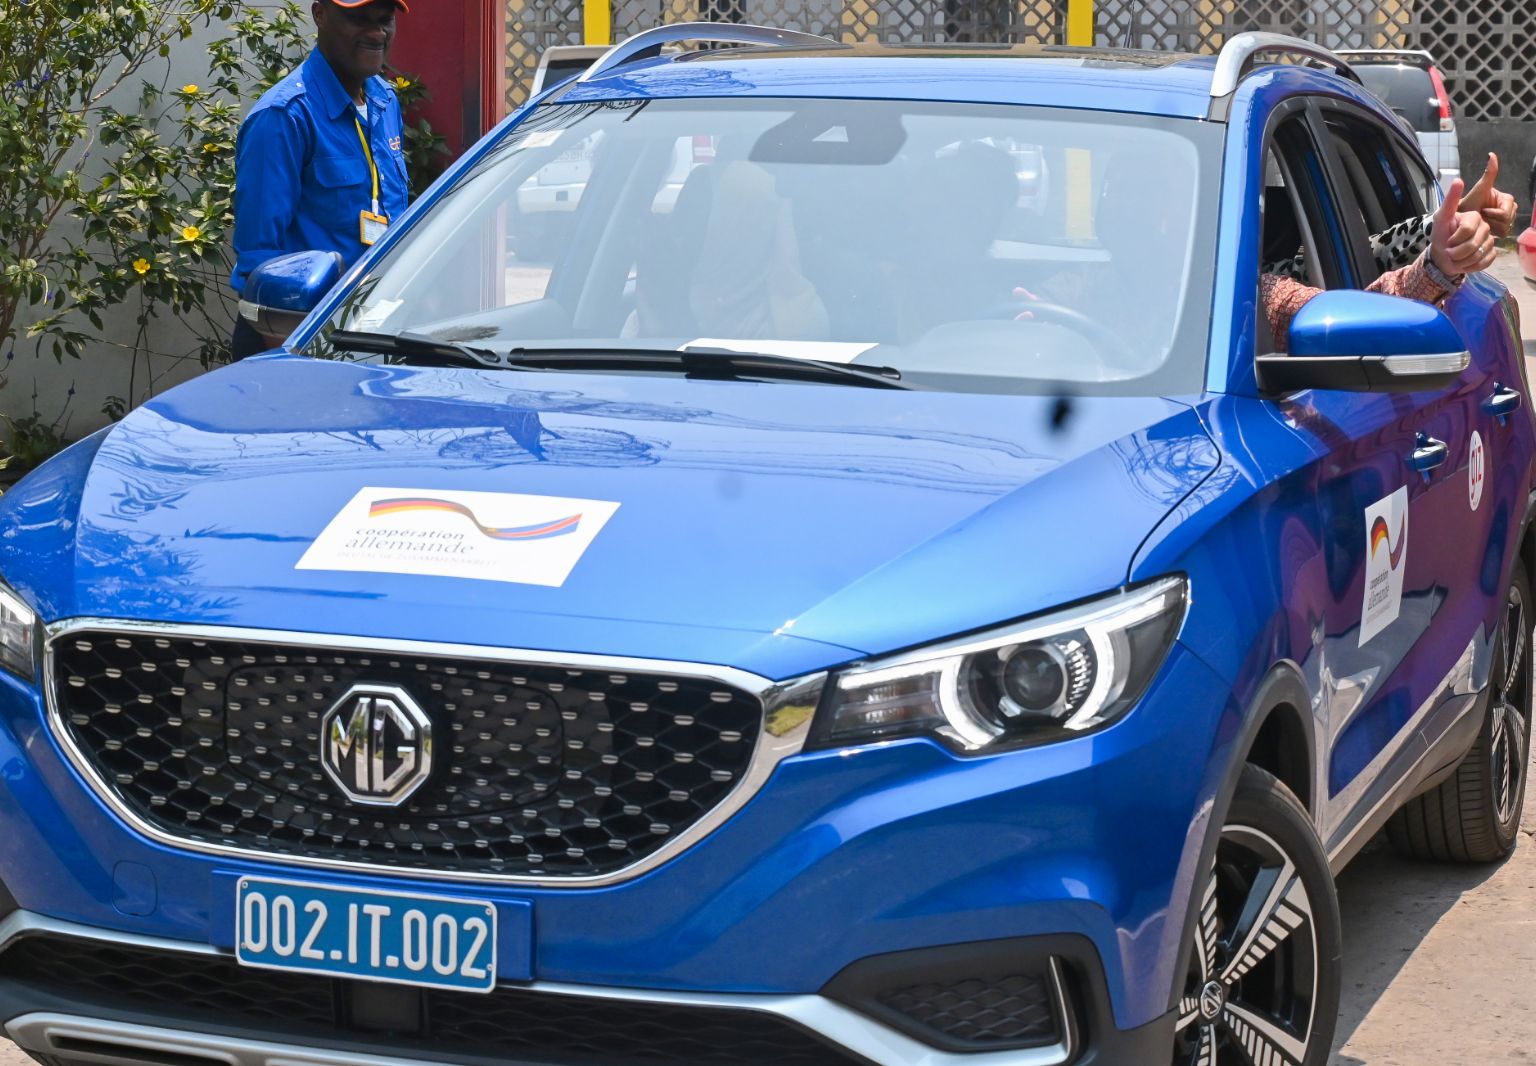 Foto: Ein blaues Auto, auf dessen Motorhaube und Türen Aufkleber mit dem deutsch-kongolesischen Kooperationslogo sowie dem GIZ-Logo zu sehen sind. Die Insassen des Autos strecken ihre gehobenen Daumen aus den geöffneten Autofenstern.